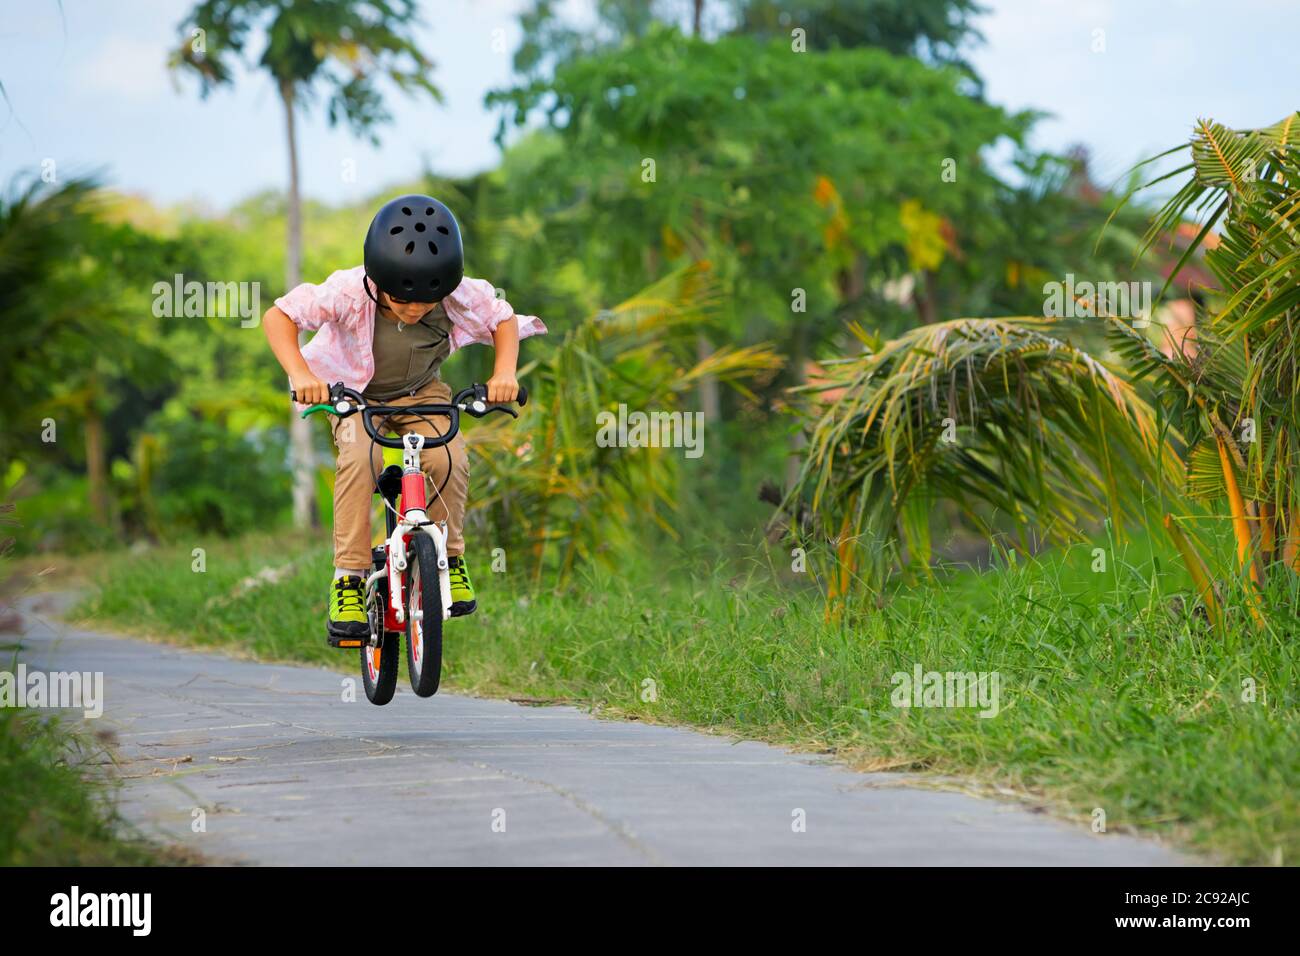 Randonnée à vélo. Jeune rider enfant dans un casque et des lunettes de soleil à vélo. Un enfant heureux s'amuse sur un sentier vide. Vie familiale active, sport, o Banque D'Images